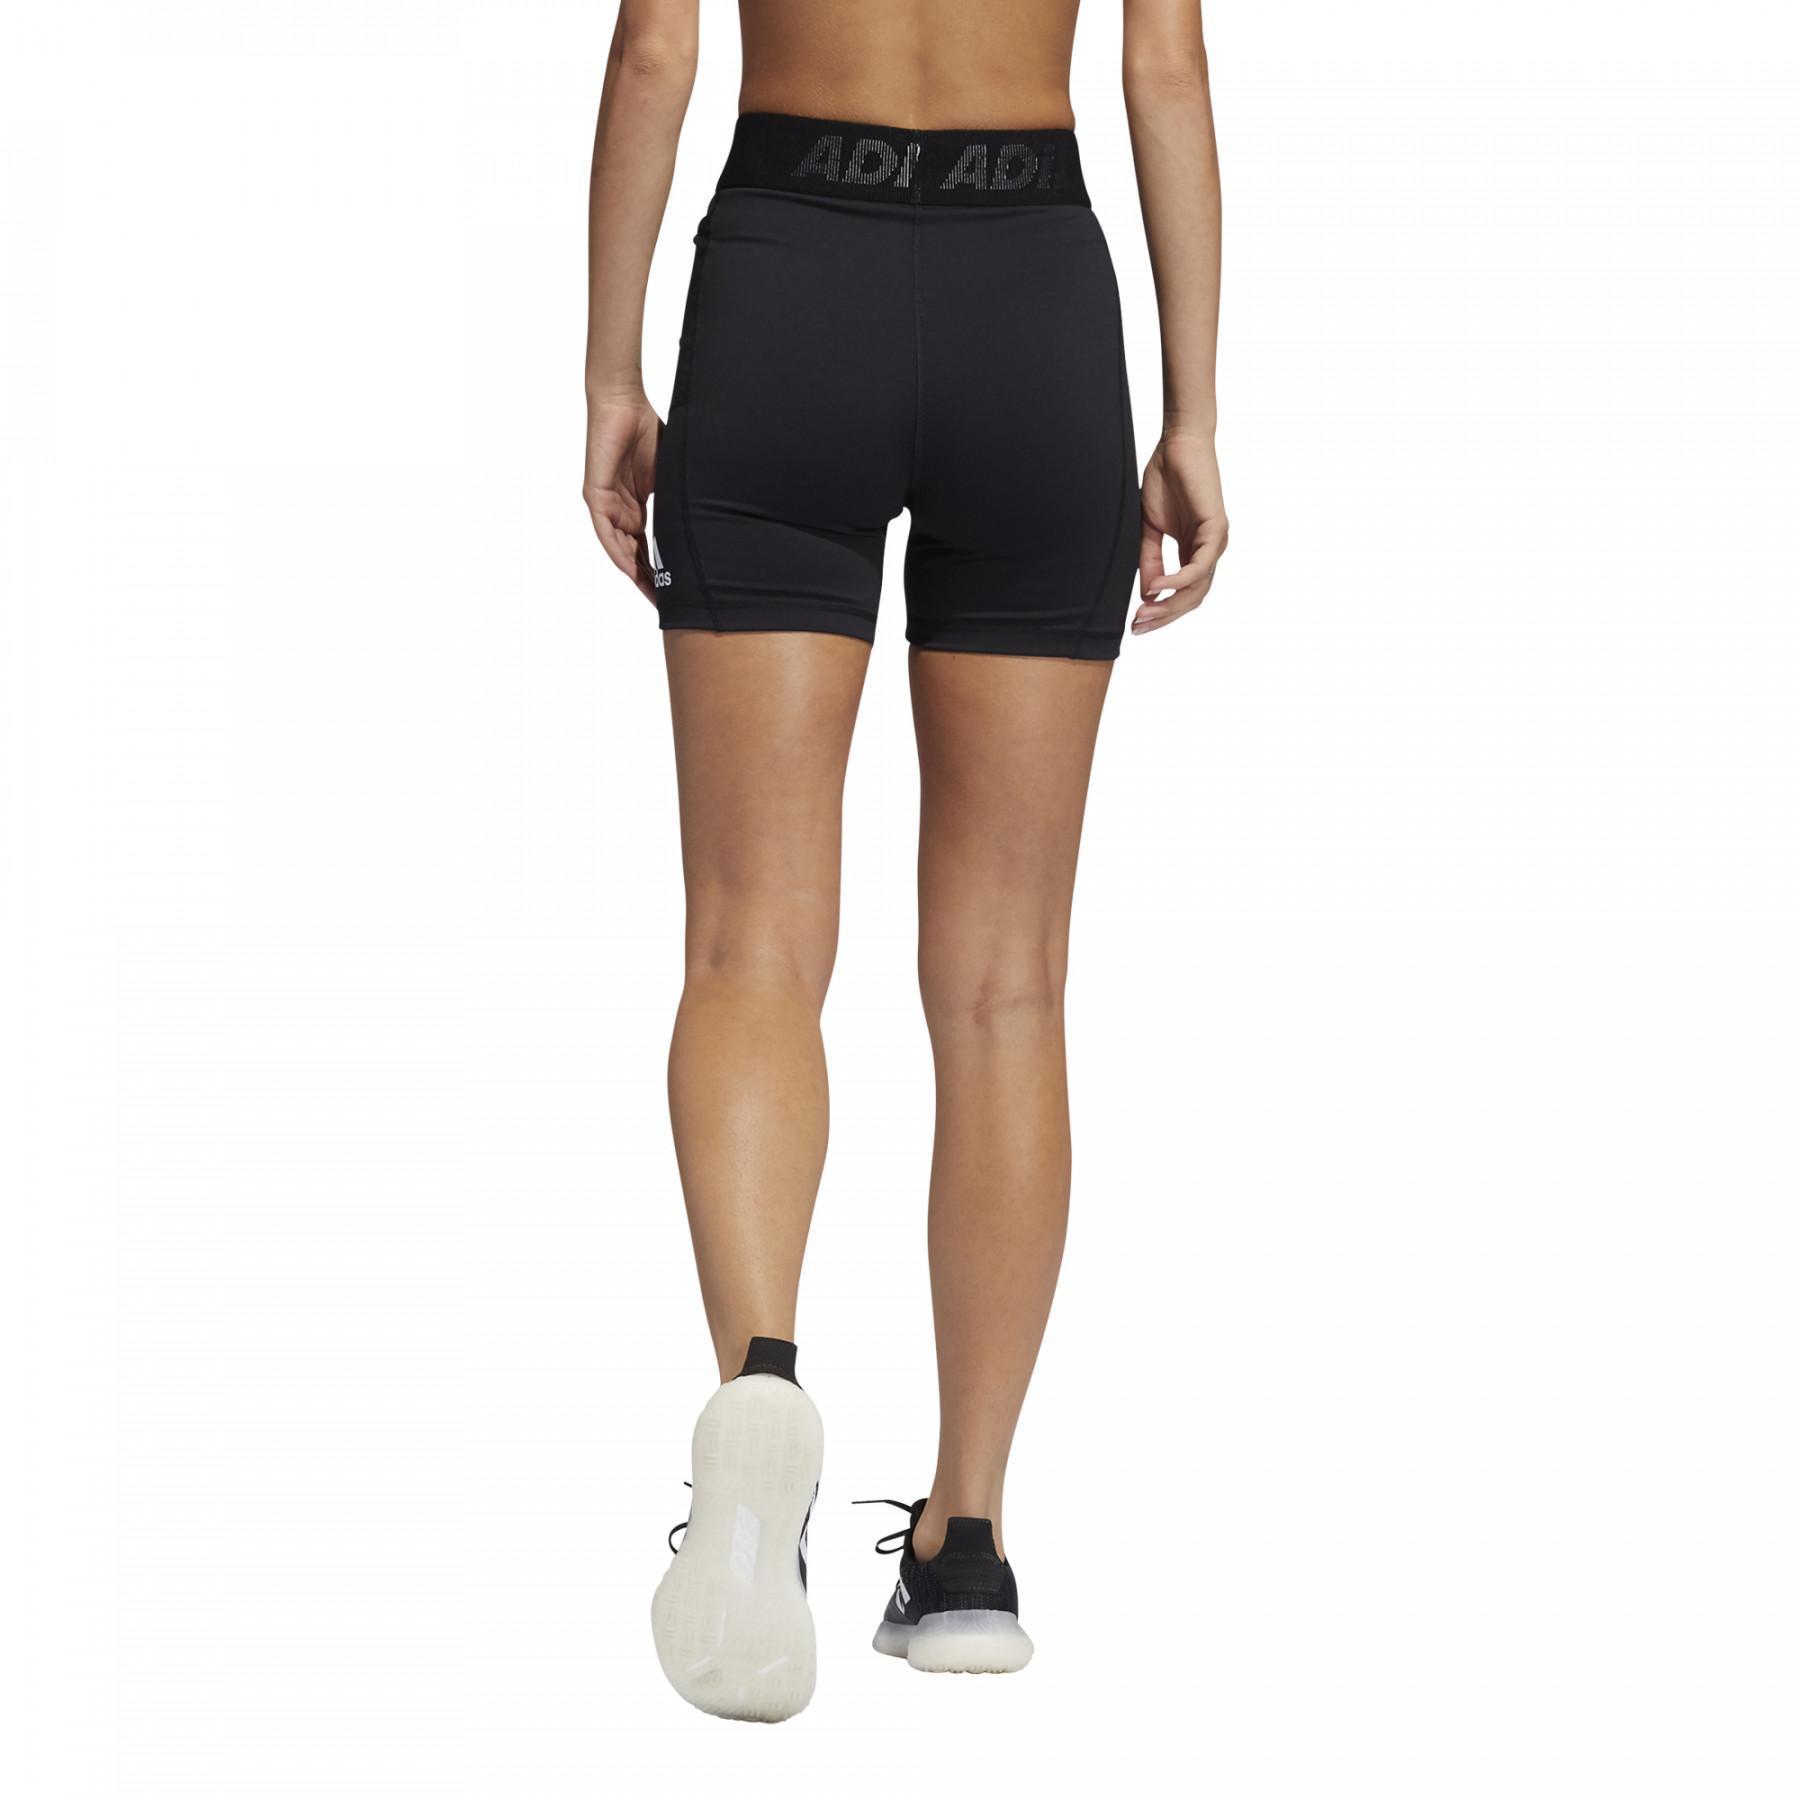 Female cyclist adidas TechFit Branded Elastic